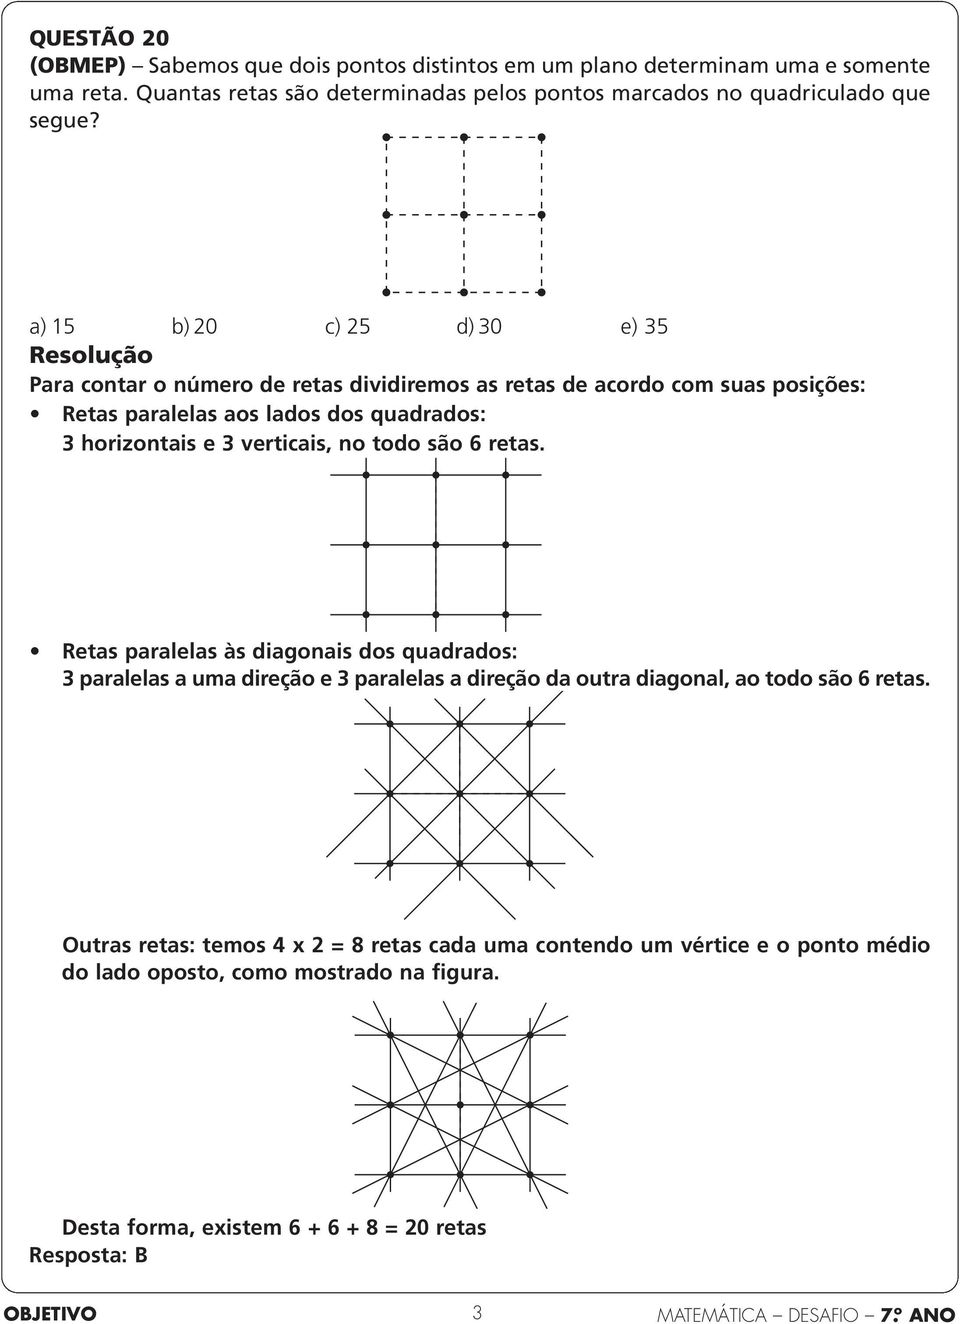 a) 15 b) 0 c) 5 d) 0 e) 5 Para contar o número de retas dividiremos as retas de acordo com suas posições: Retas paralelas aos lados dos quadrados: horizontais e